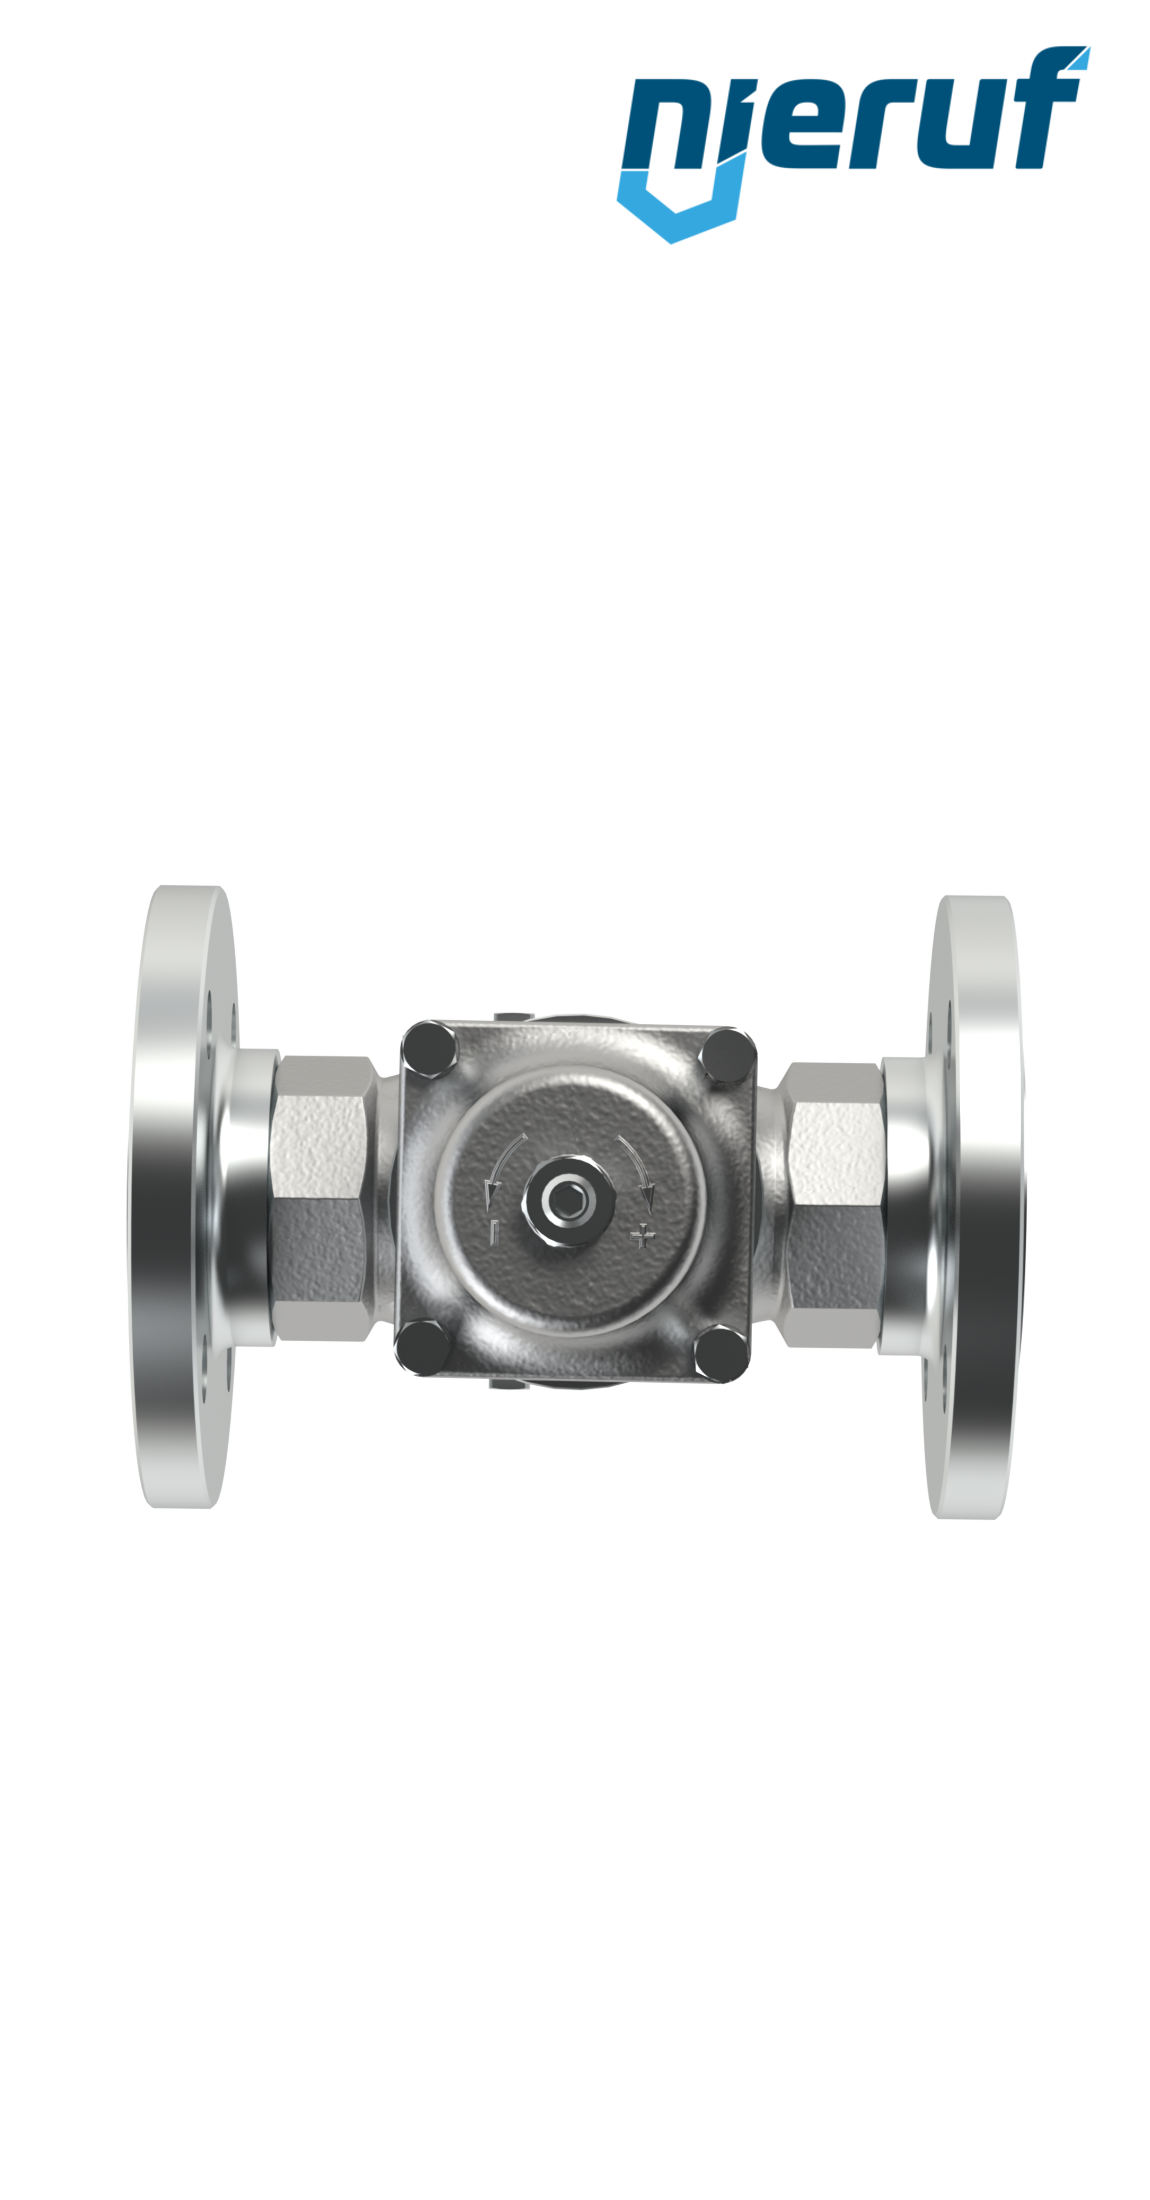 Piston-pressure reducing valve DN32 DM11 flange ANSI 150 stainless steel FPM / FKM 2.0 - 20.0 bar